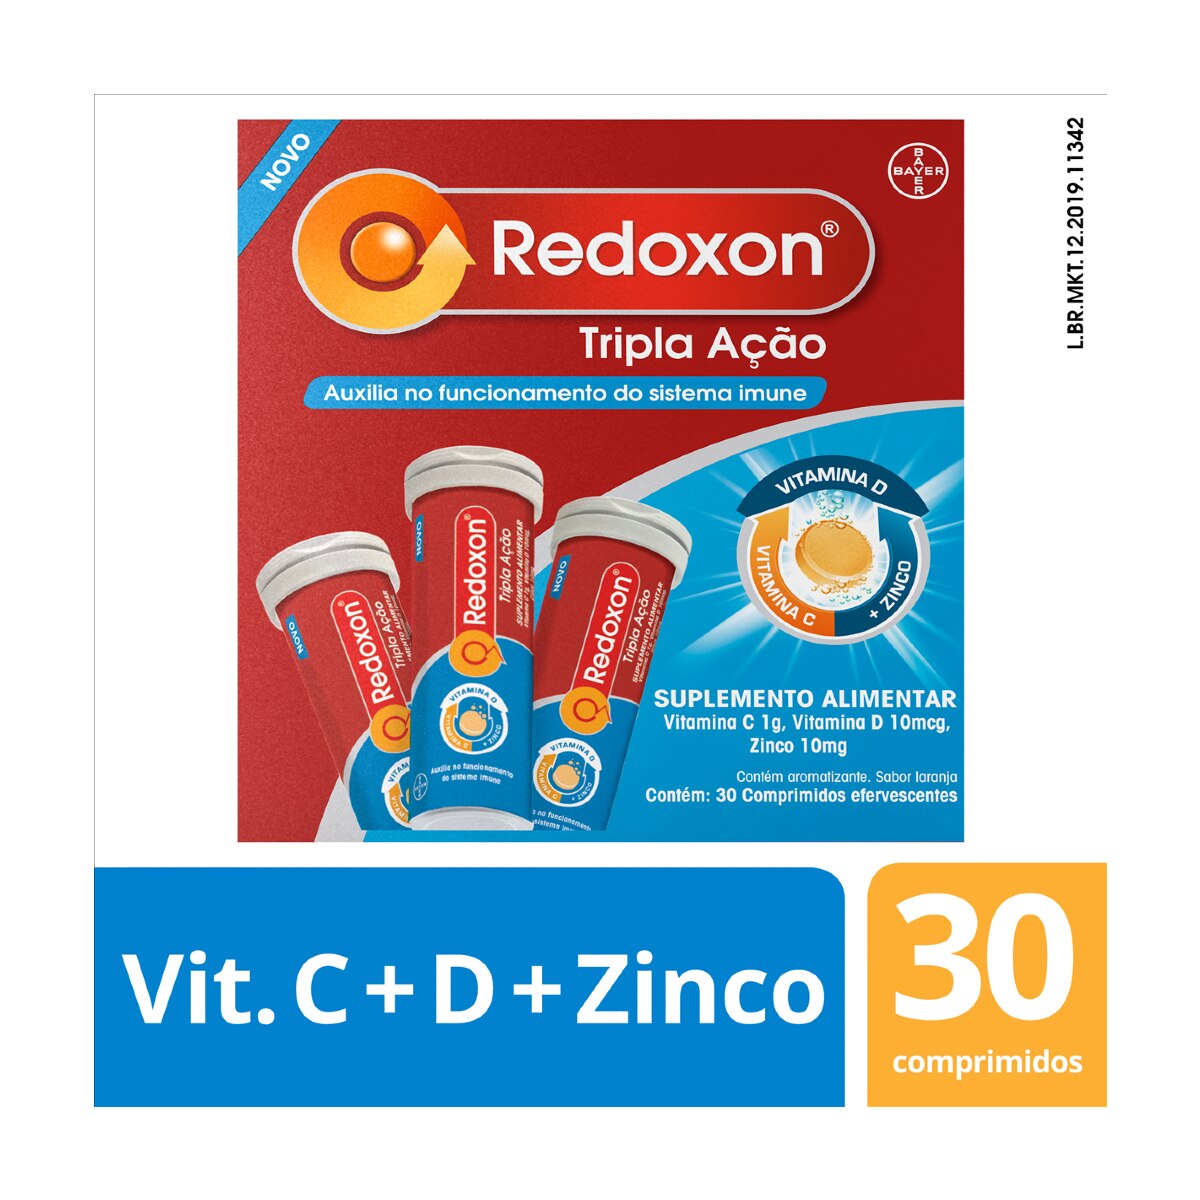 Redoxon Tripla Acao 30 Comprimidos Efervescentes